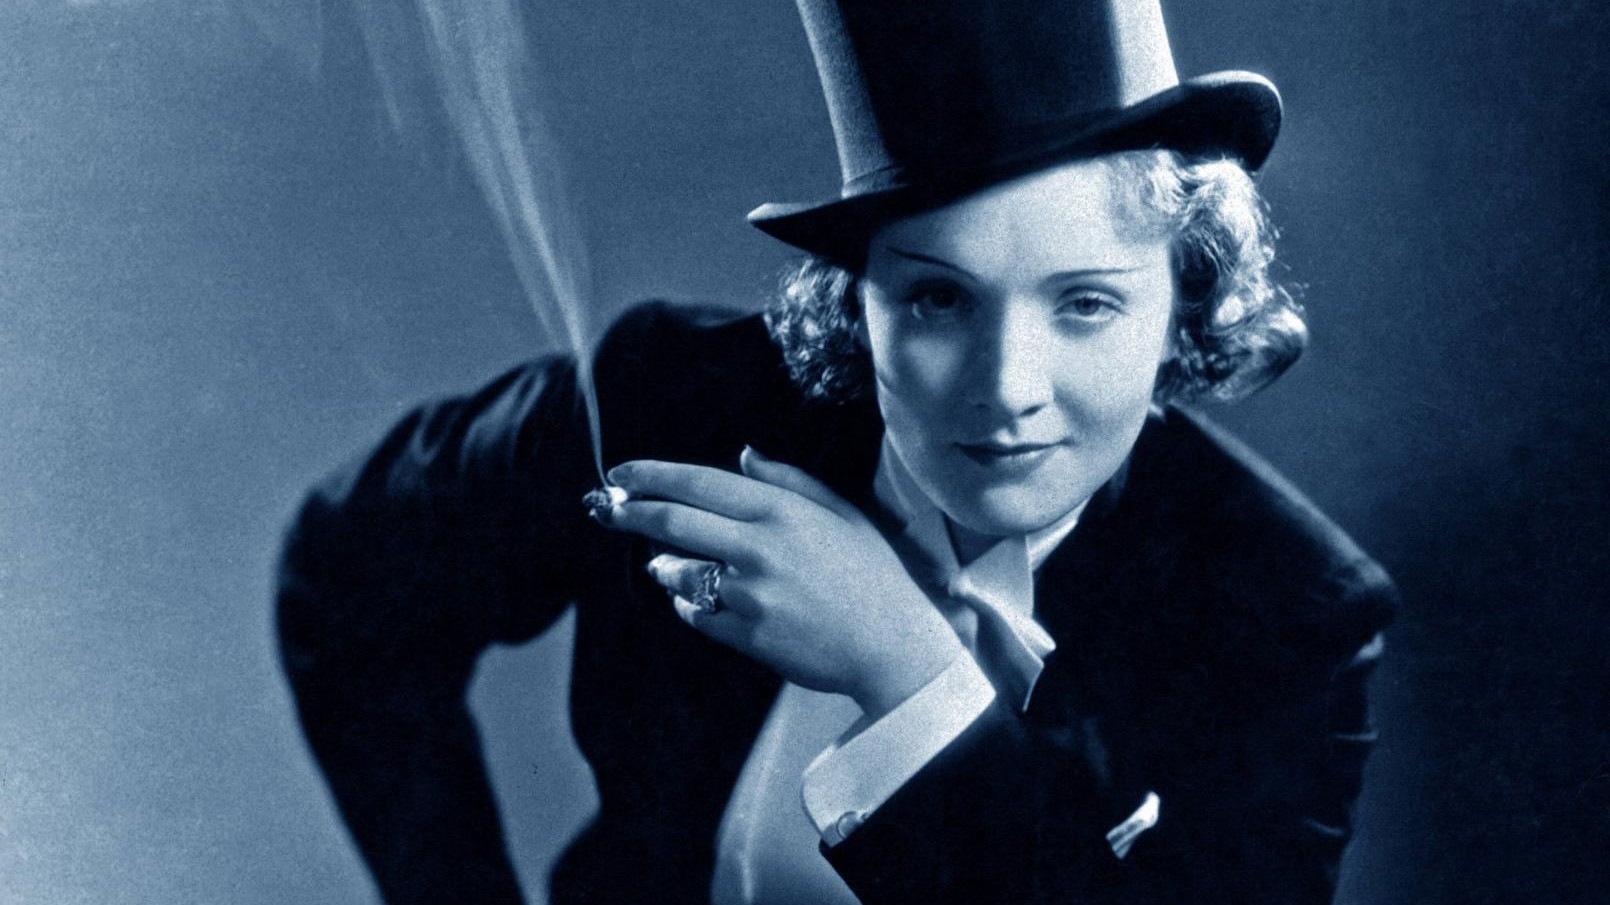 Diane Kruger spielt Marlene Dietrich: Biografie-Verfilmung von Fatih Akin -  DER SPIEGEL